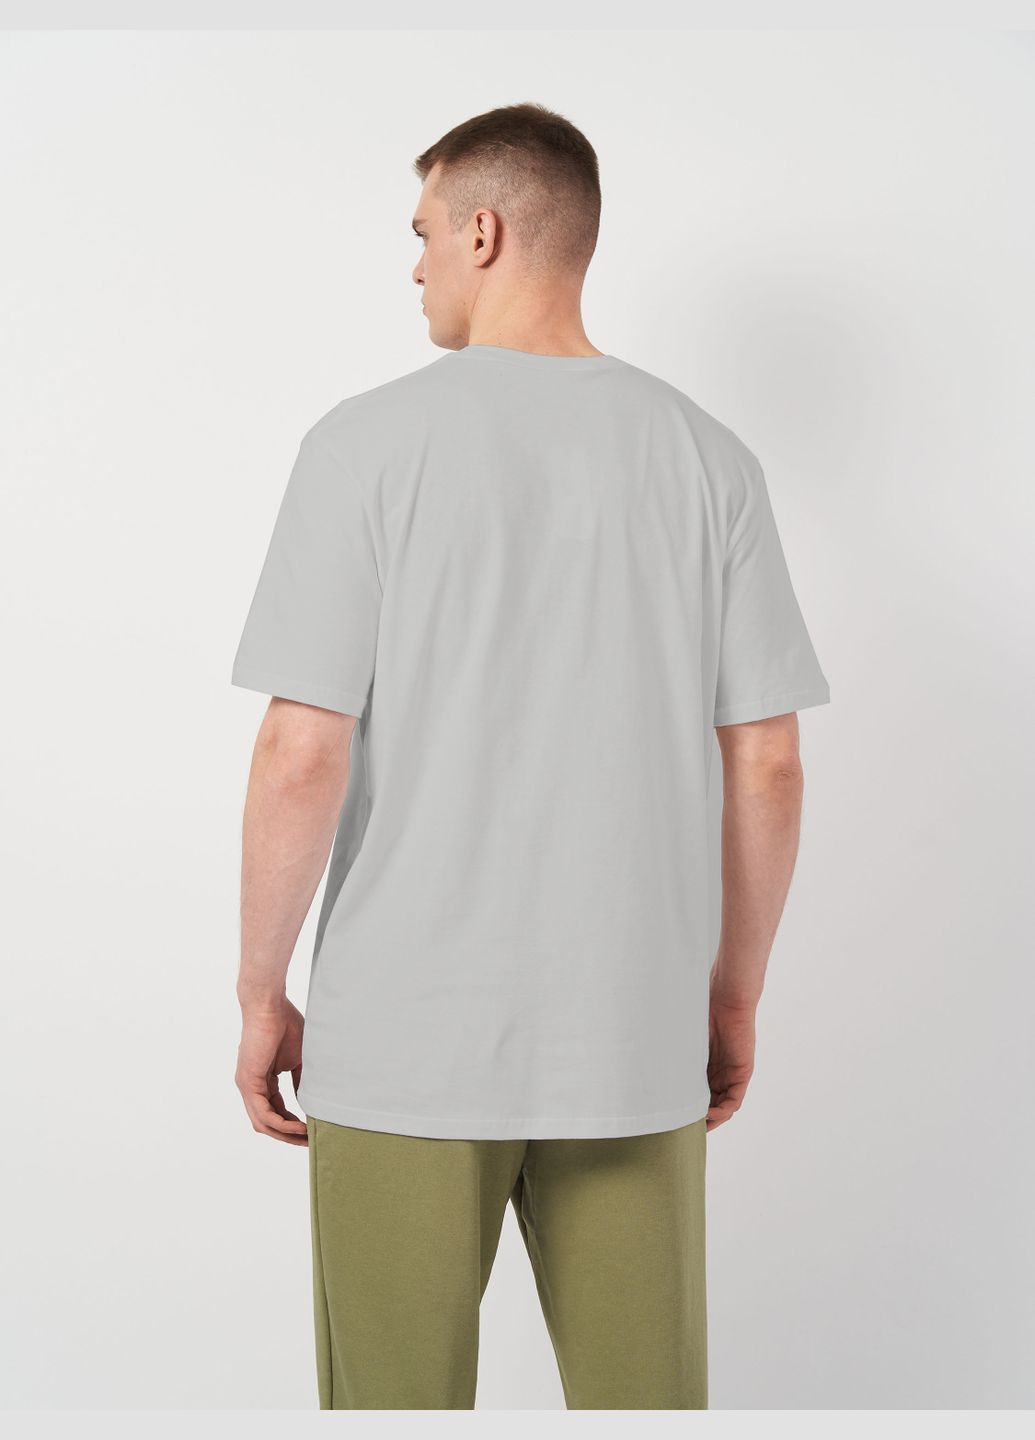 Світло-сіра футболка для чоловіків базова з коротким рукавом Роза